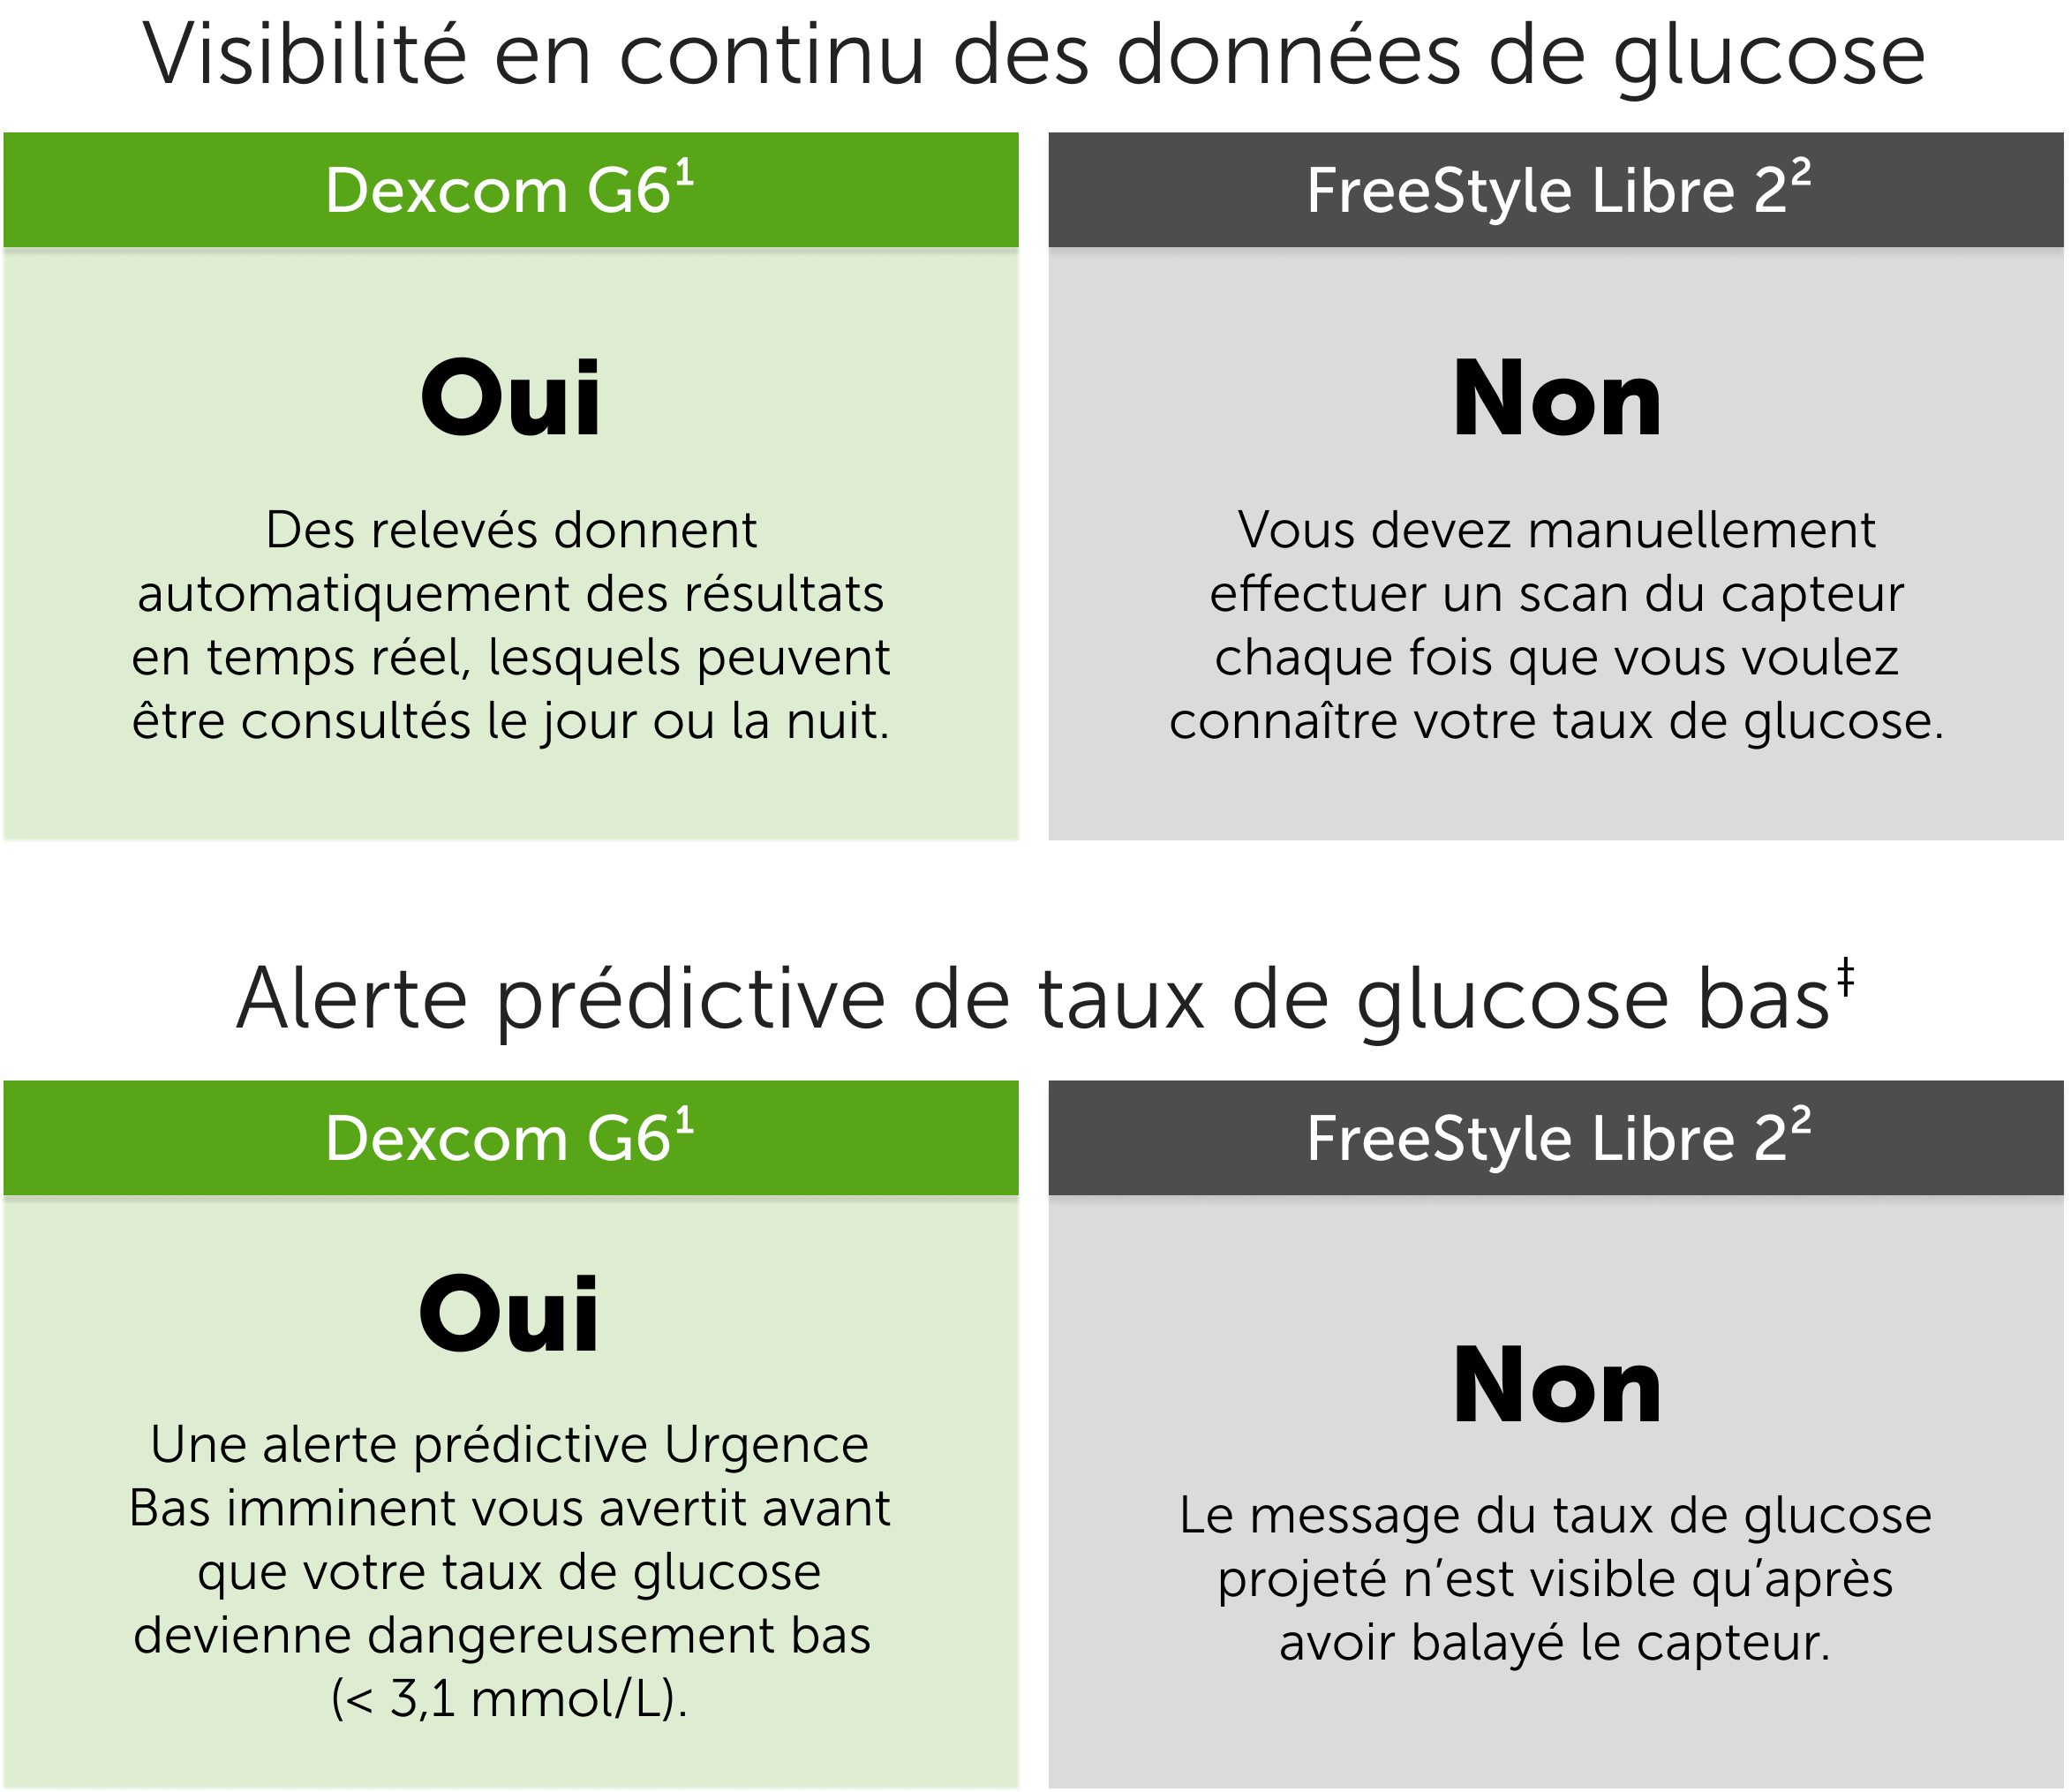 FreeStyle Libre vs. Dexcom G6 visibilité en continu des données de glucose et alertes